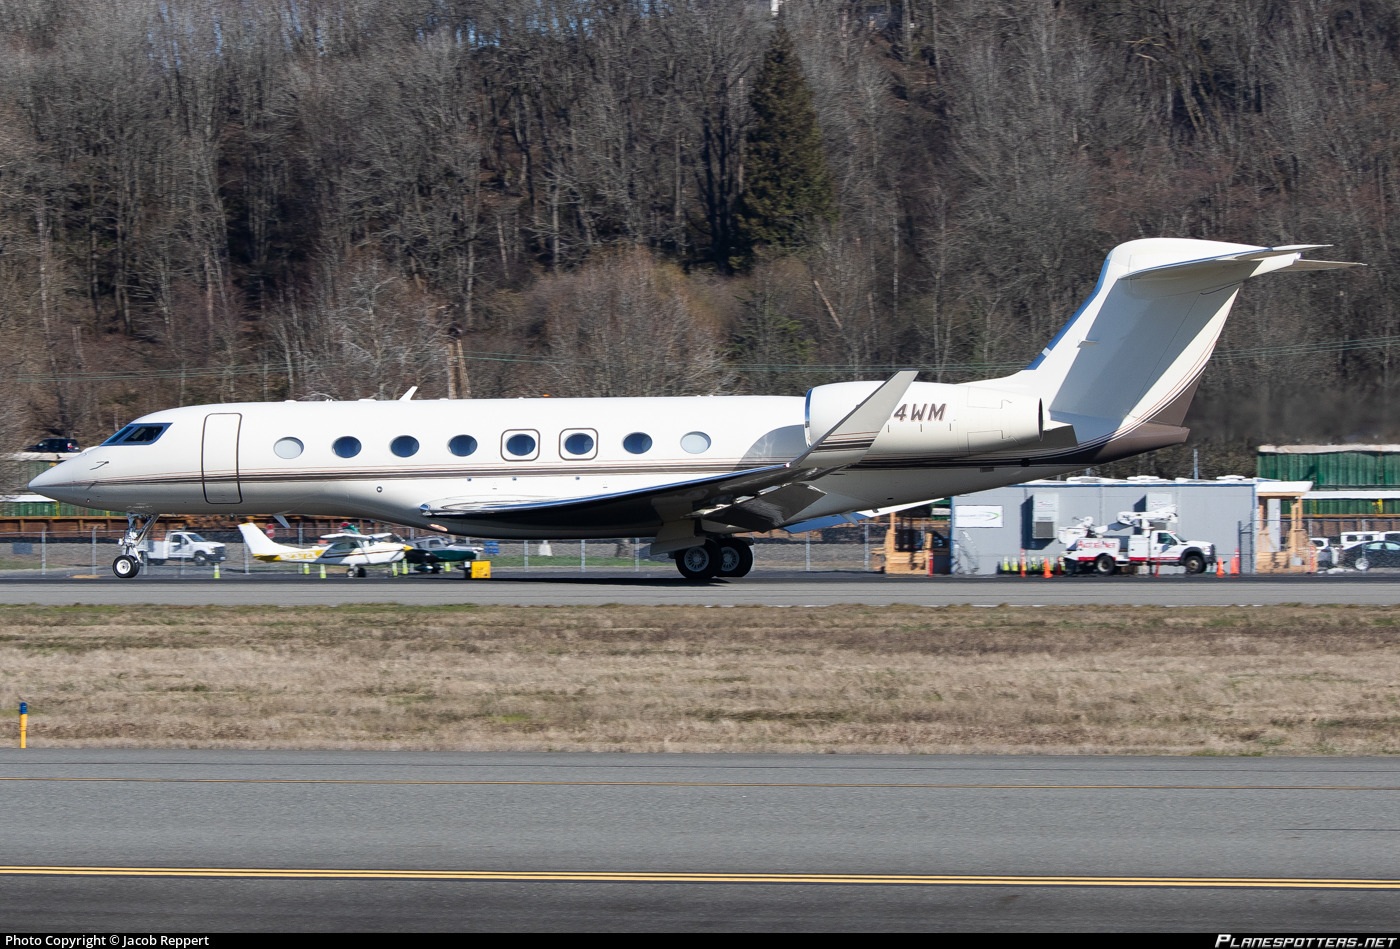 Hình ảnh bên ngoài chiếc Gulfstream G650ER của tỷ phú Bill Gates (Ảnh: Simple).